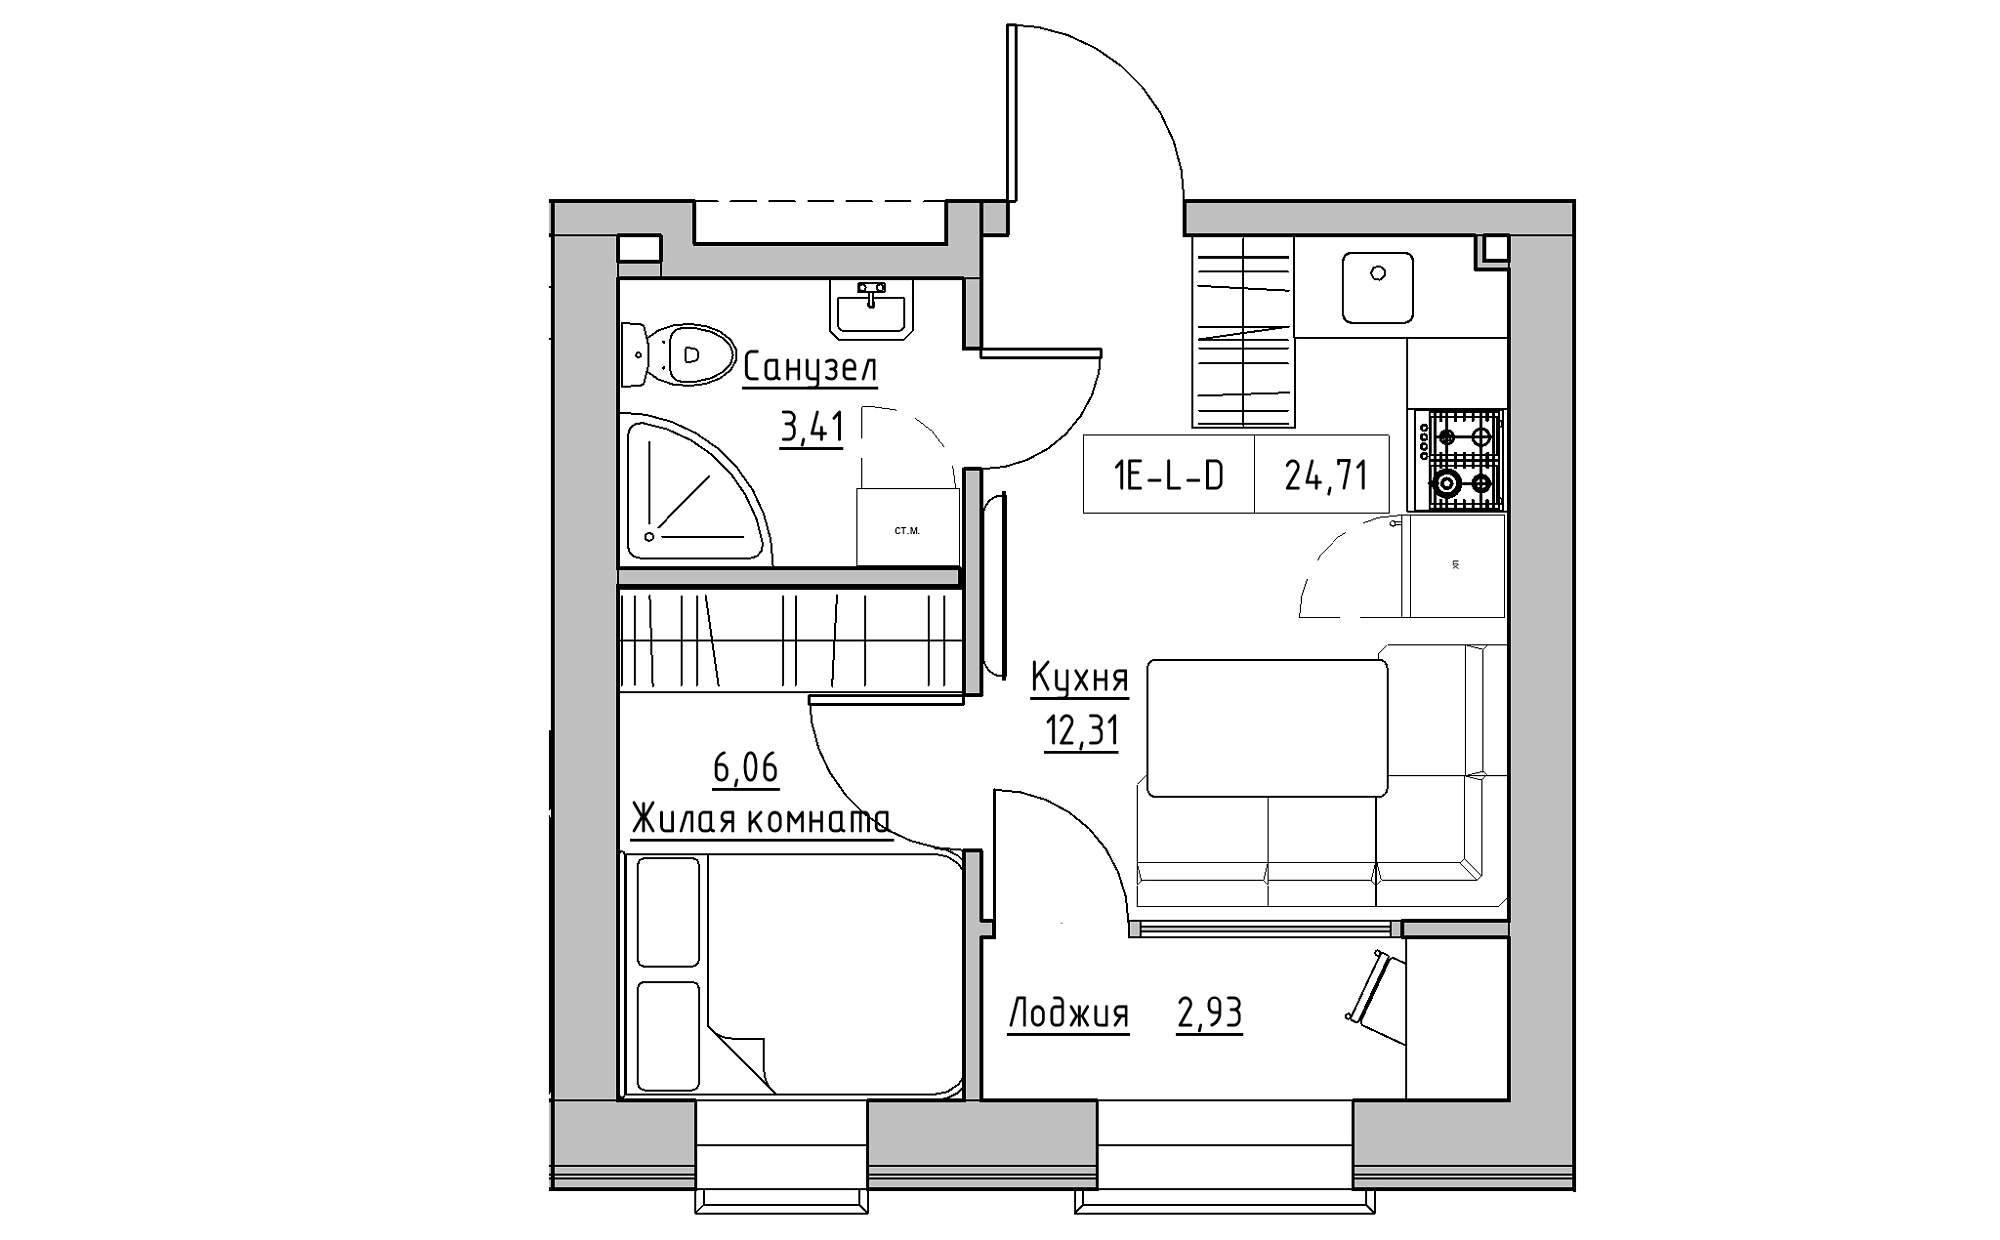 Планировка 1-к квартира площей 24.71м2, KS-022-02/0002.